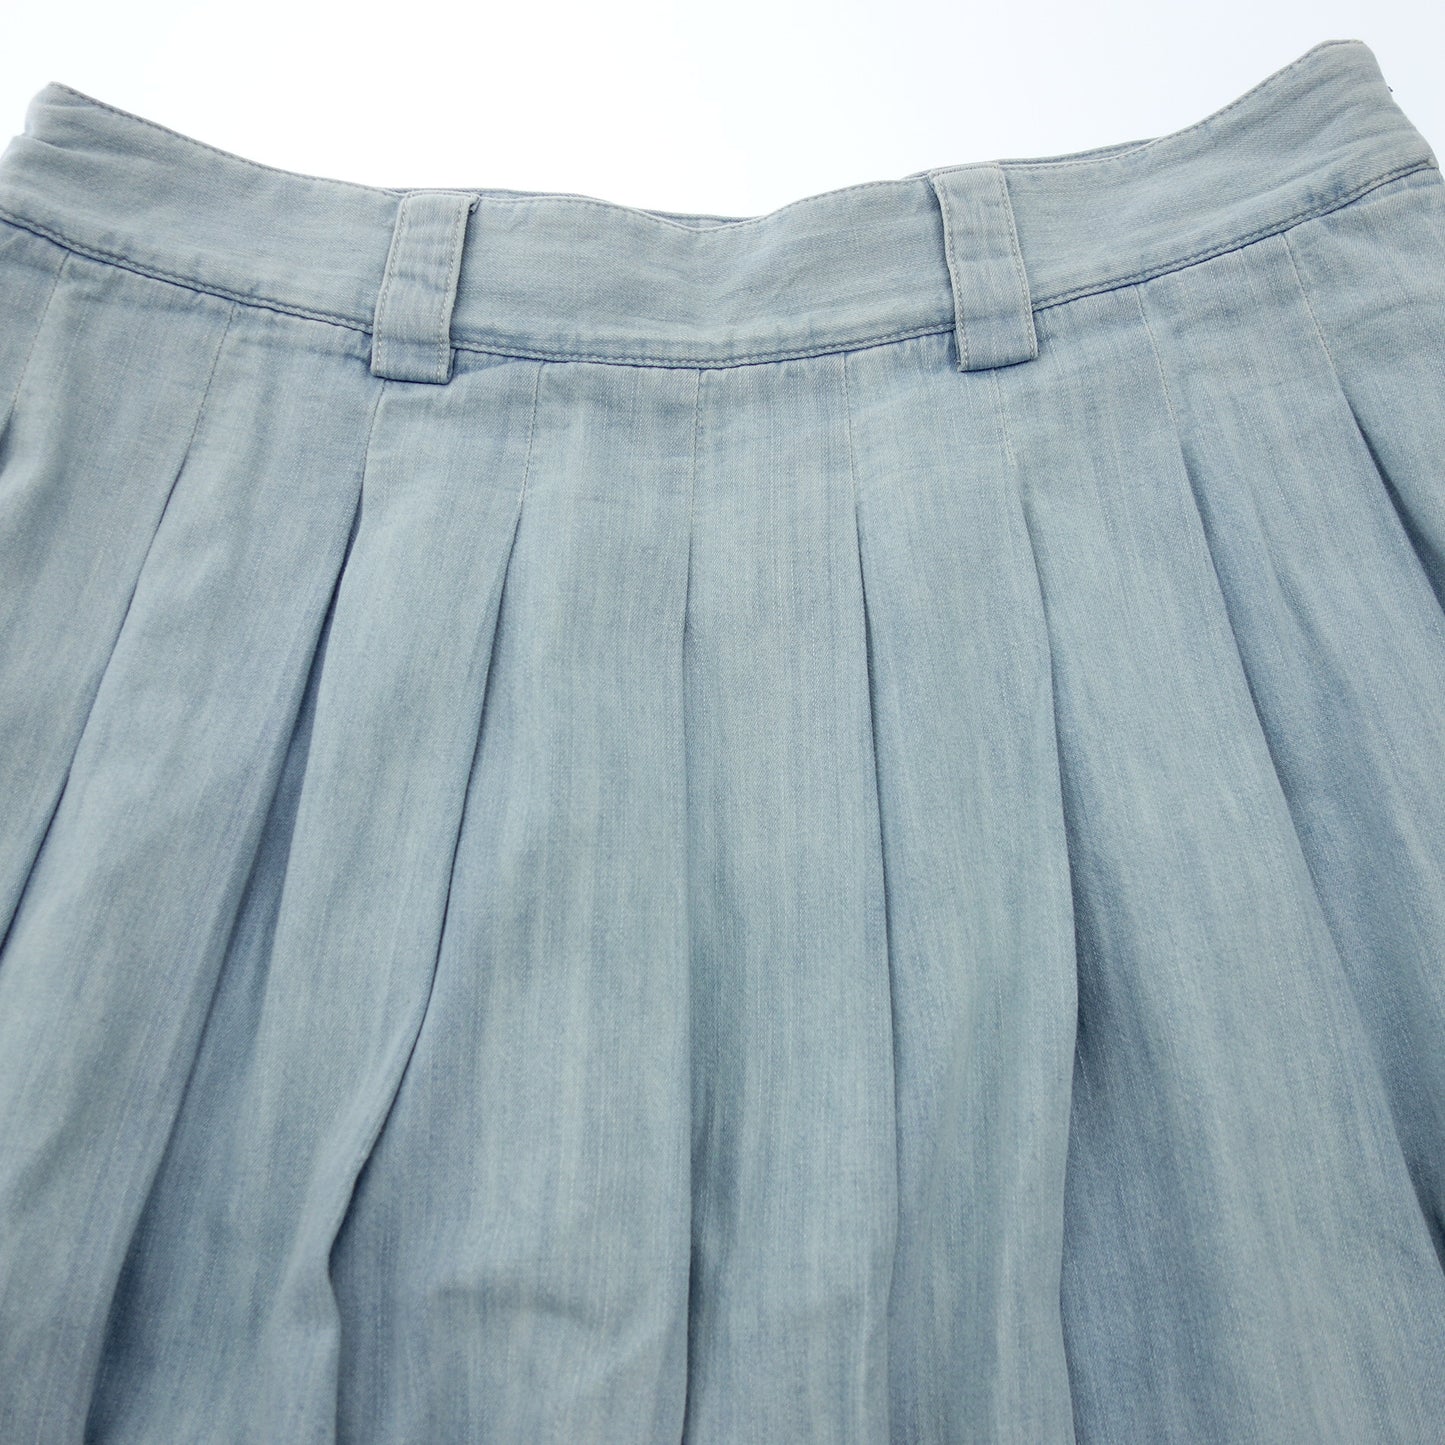 Miu Miu pleated skirt denim back logo ladies blue 42 MIUMIU [AFB26] [Used] 